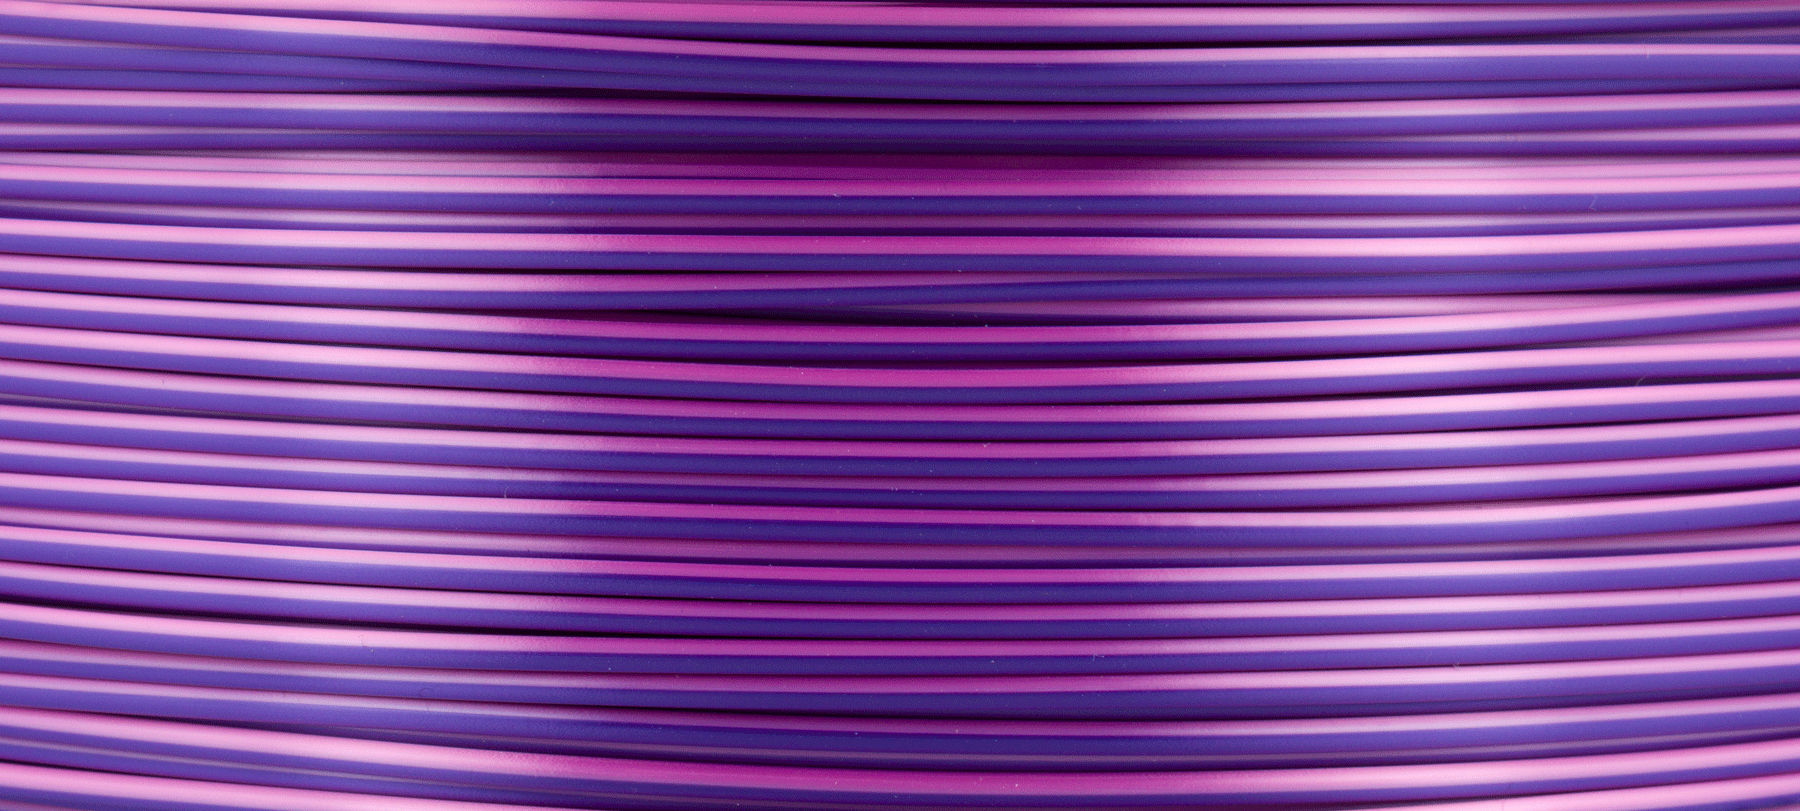 PS-PLAC-175-0750-PP, Prima Filament pour imprimante 3D, PLA, 1.75mm, Rose  / violet, 750g